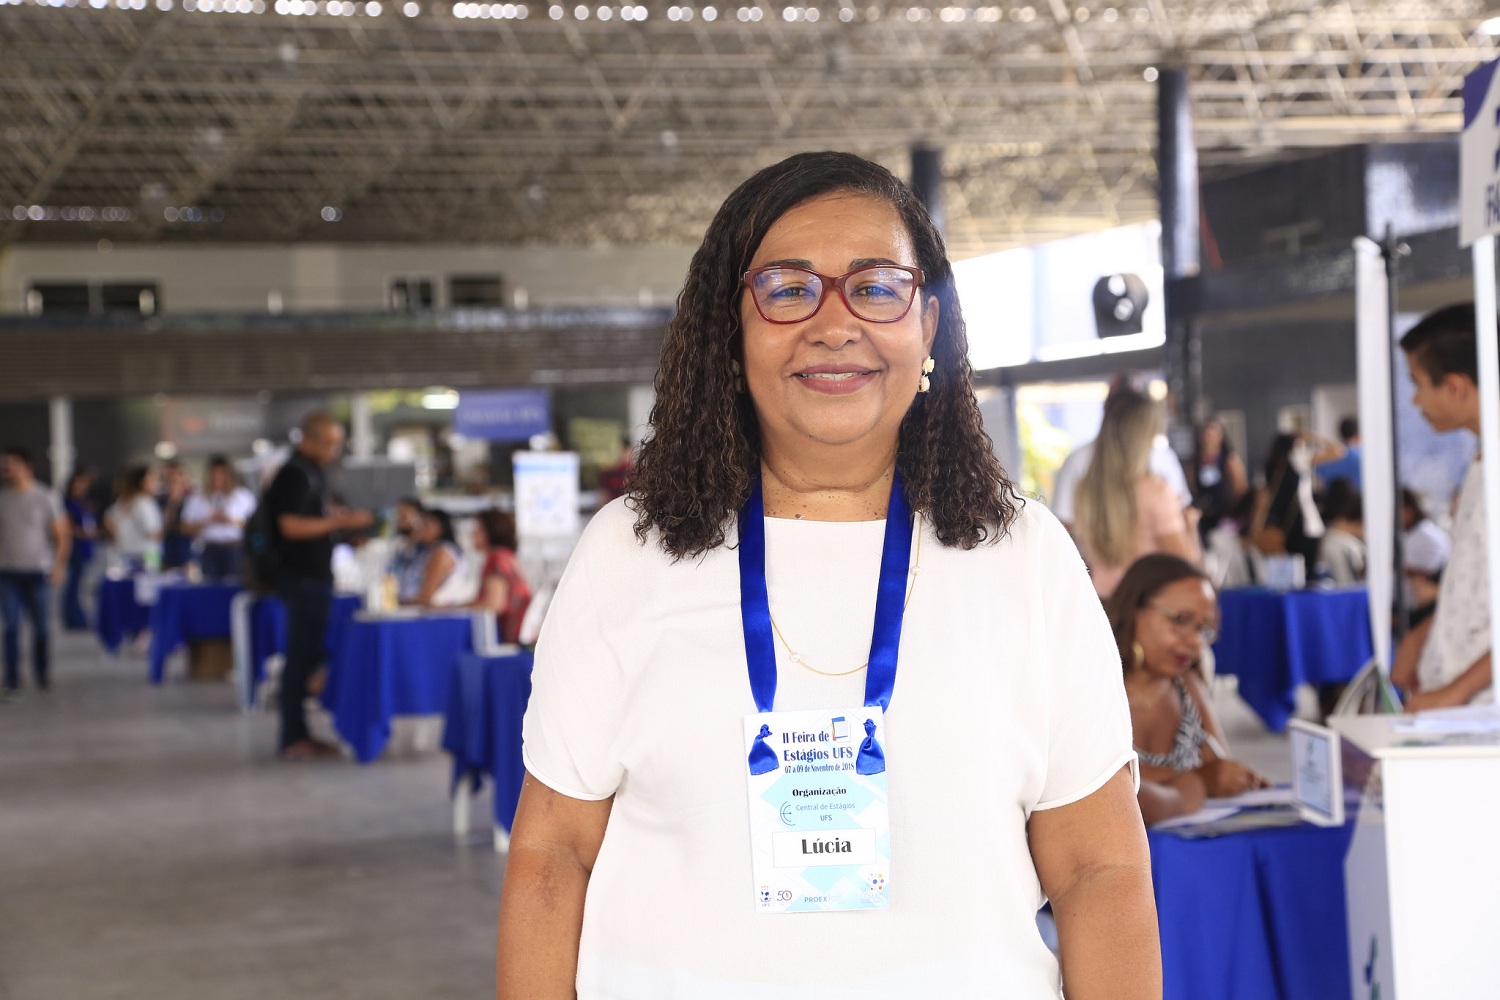 “O intuito [da feira] é despertar o interesse dos alunos para o caminho profissional", diz a coordenadora de Estágios da UFS Lucia Lima.